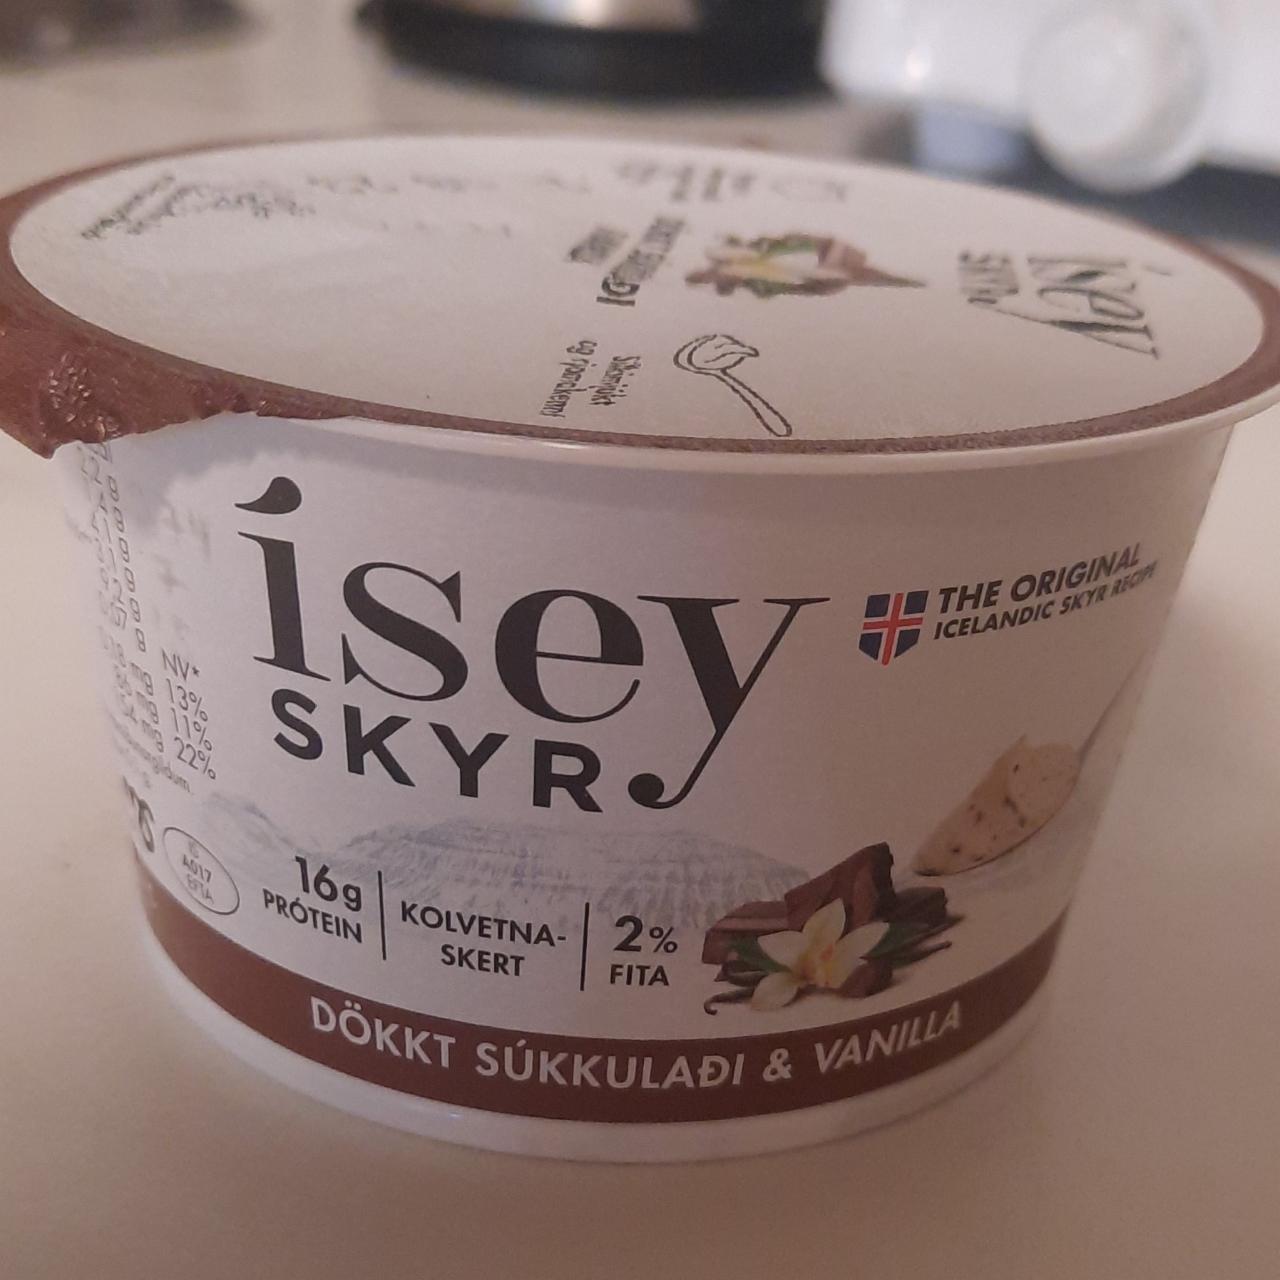 Фото - исландский йогурт skyr ваниль с шоколадом Isey